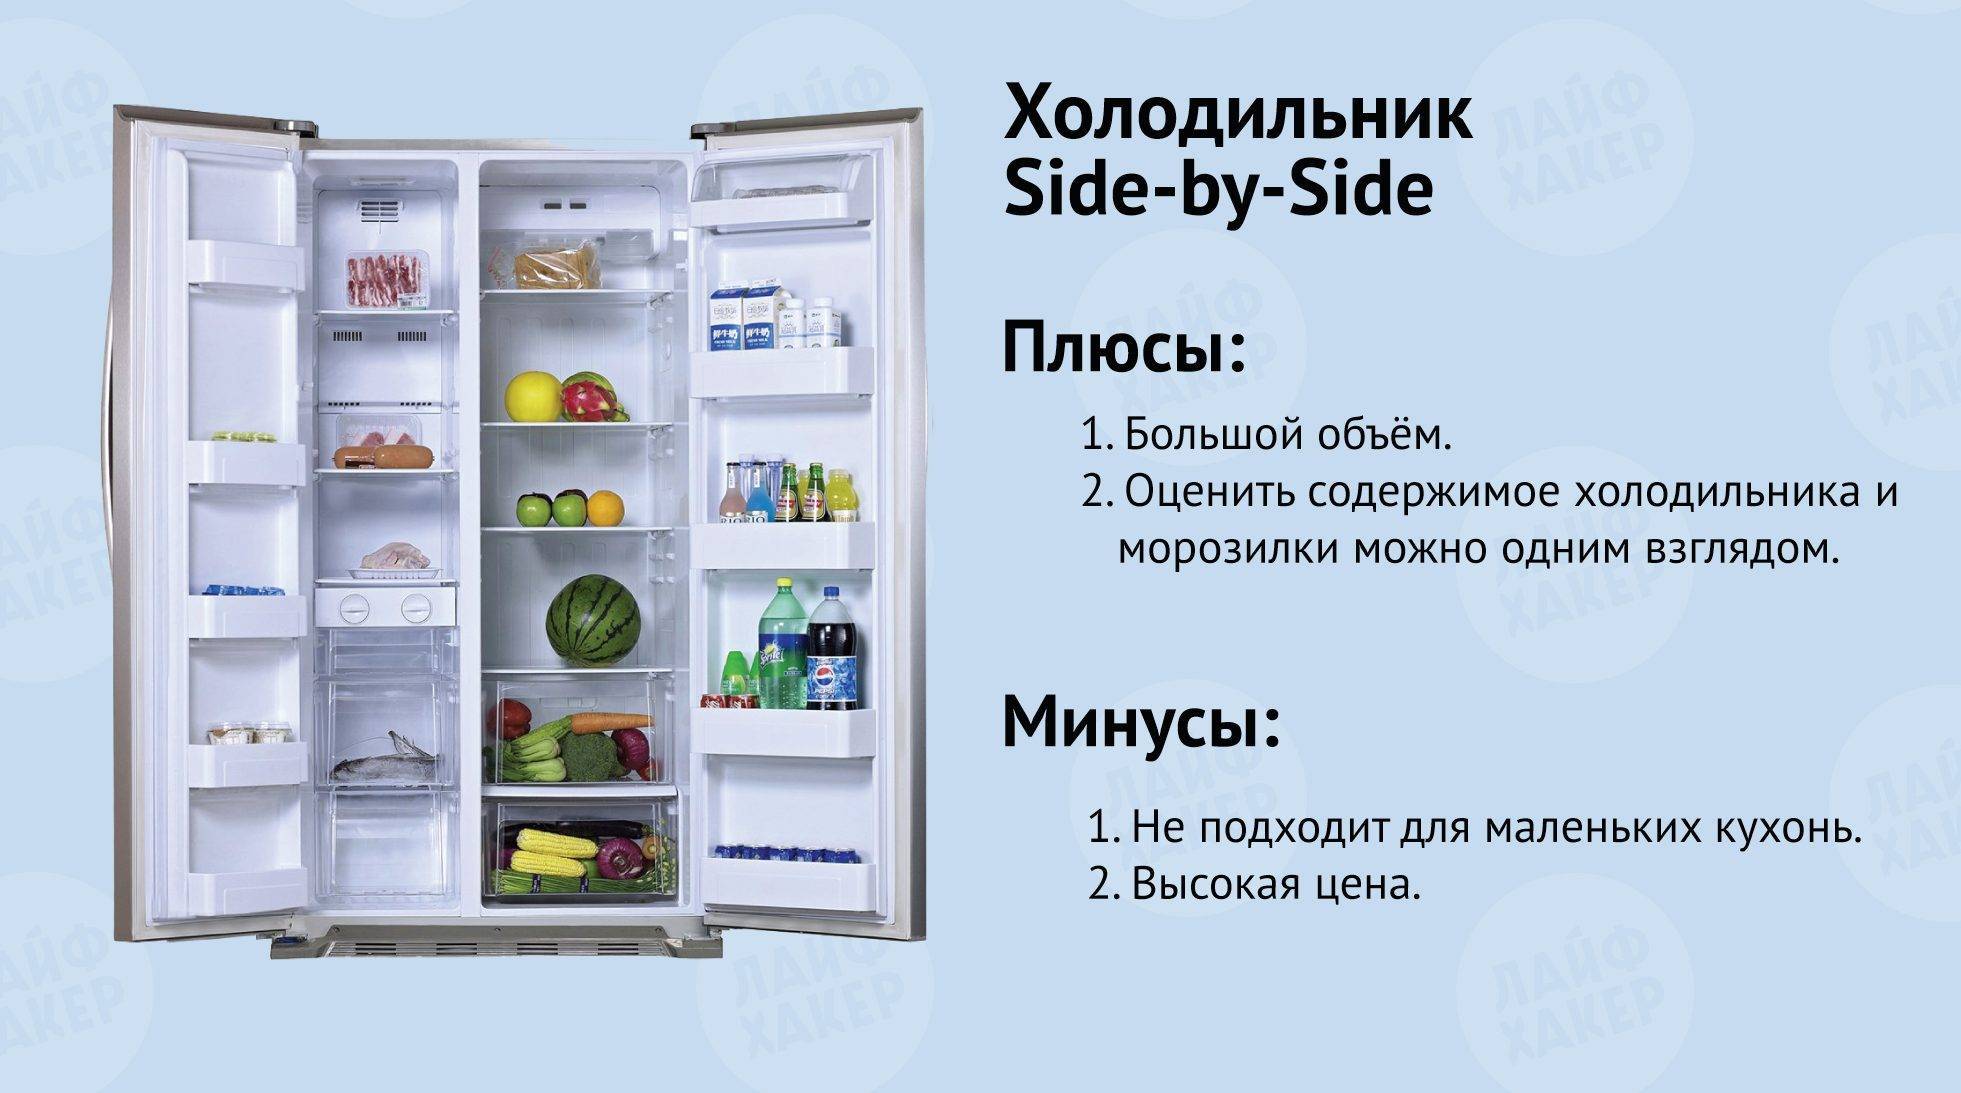 Какая оптимальная температура должна быть в холодильнике?